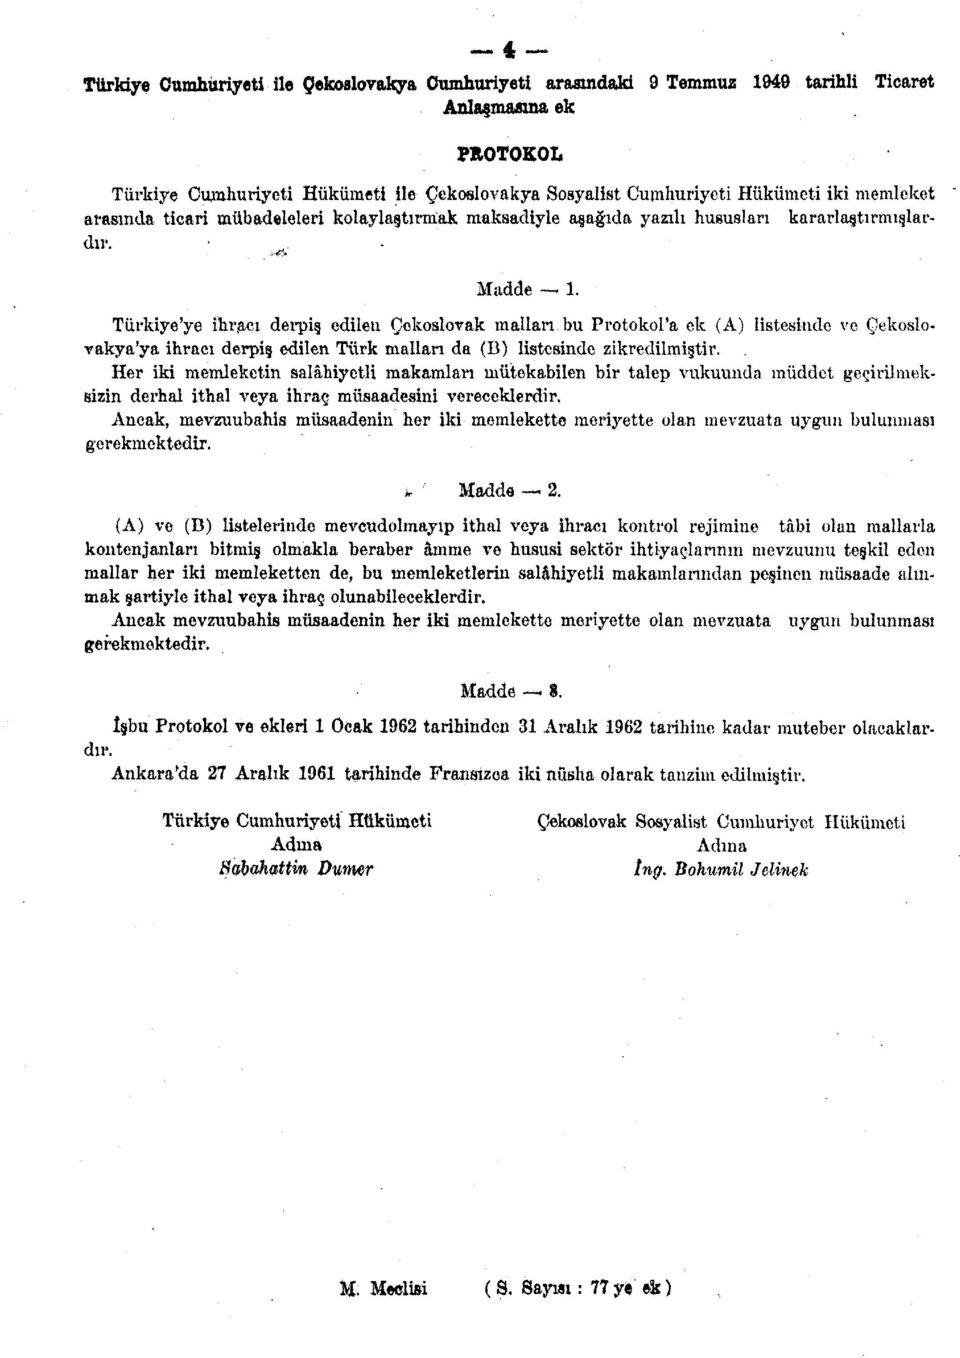 Türkiye'ye ihracı derpiş edilen Çekoslovak malları bu Protokol'a ek (A) listesinde ve Çekoslovakya'ya ihracı derpiş edilen Türk mallan da (B) listesinde zikredilmiştir.